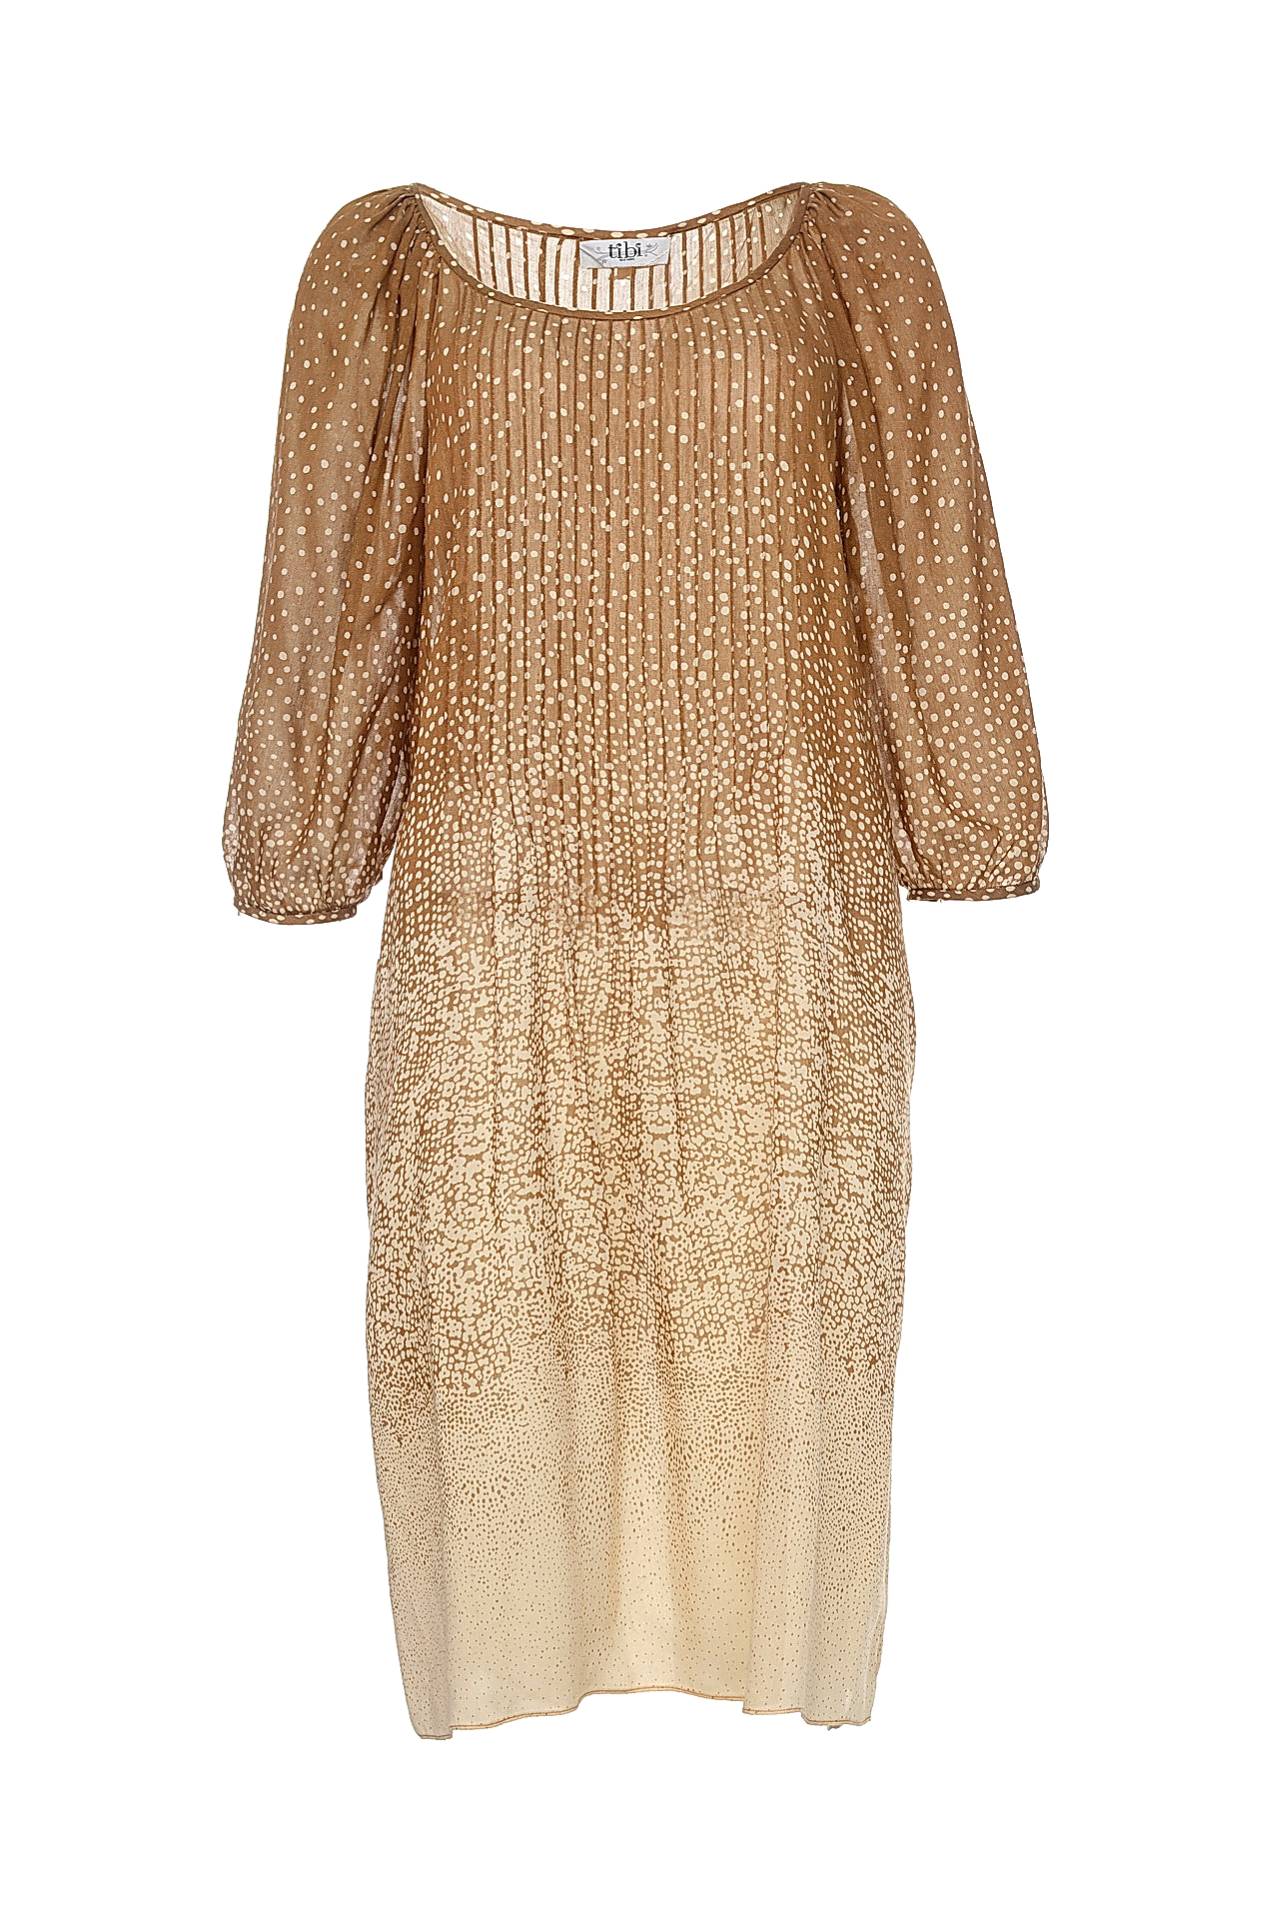 Одежда женская Платье TIBI (RS1CON10510/11.1). Купить за 11960 руб.